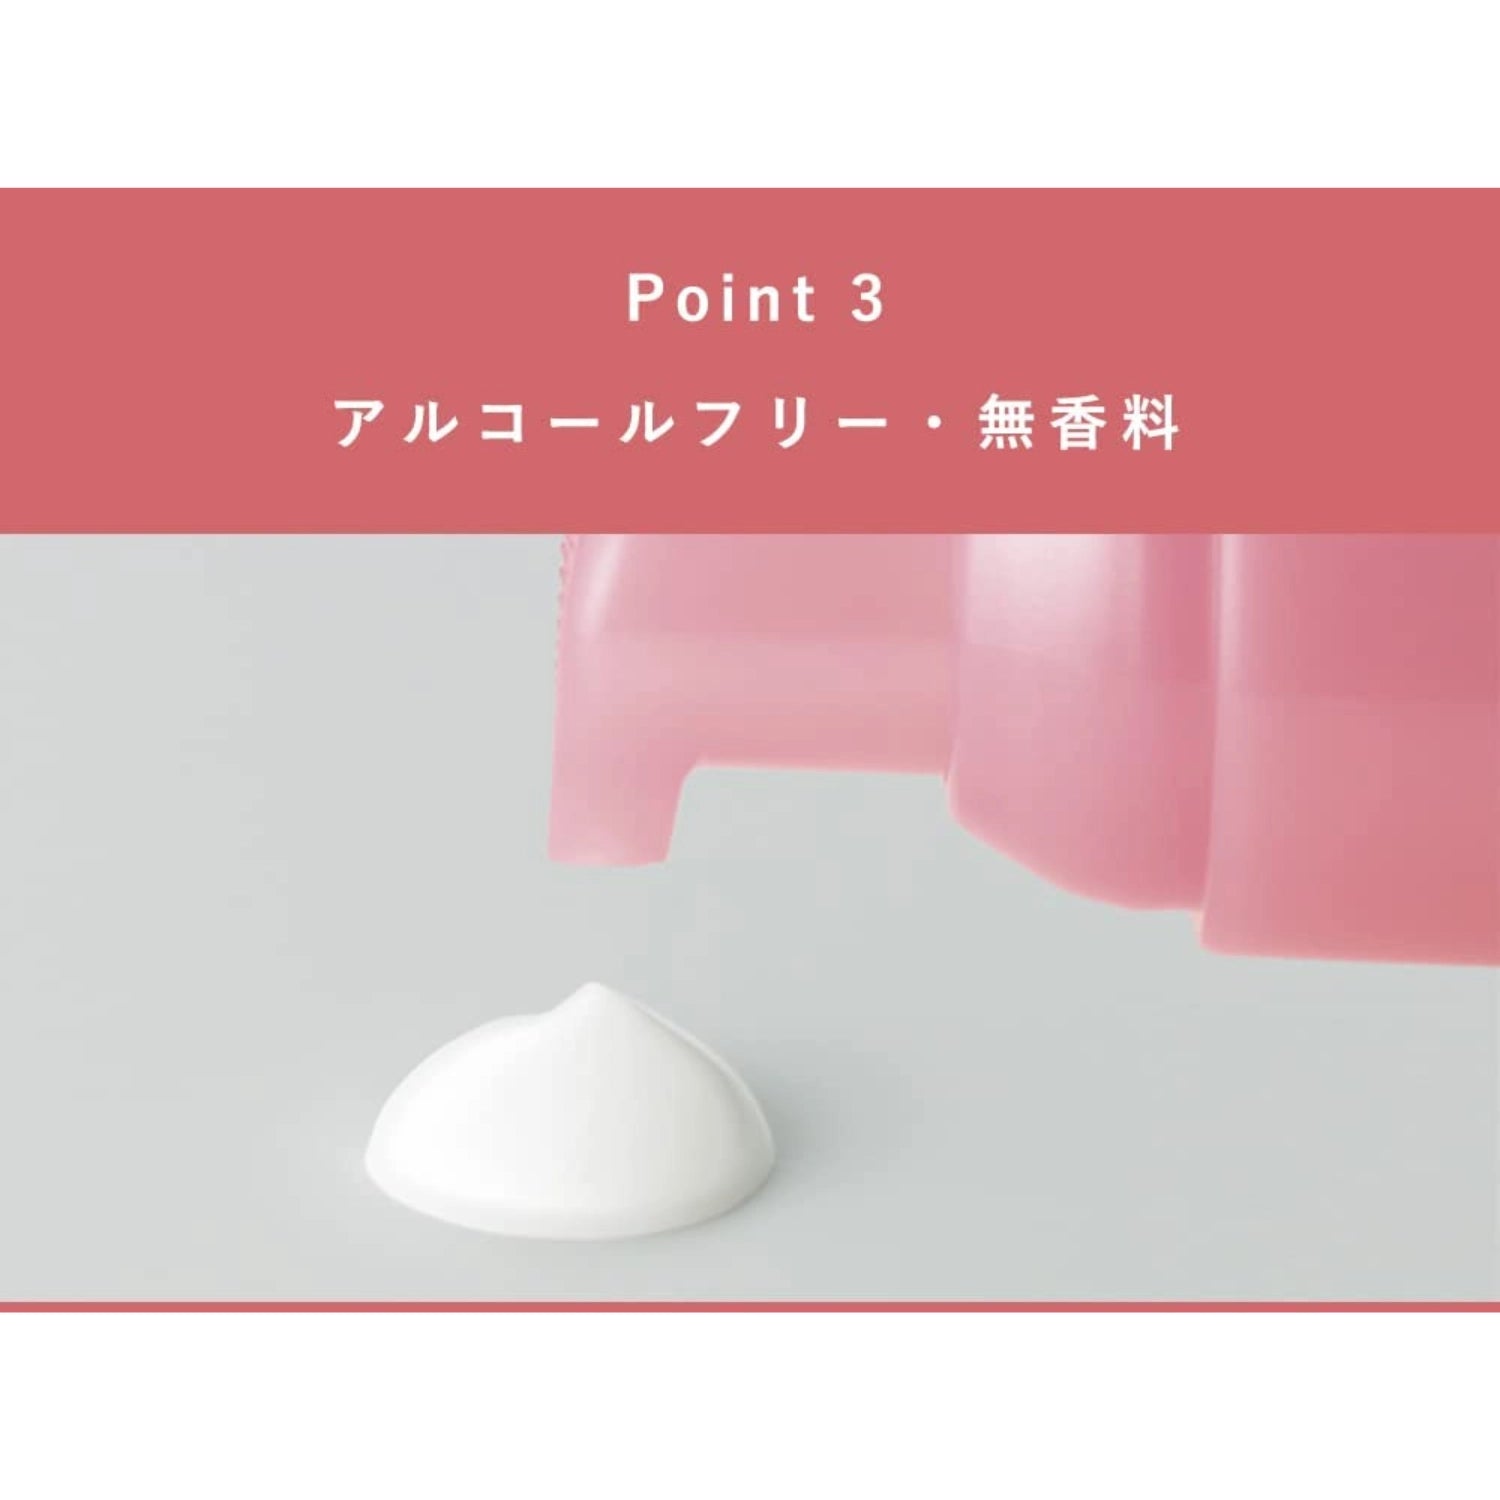 Orbis Essence In Hair Milk Hair Treatment 140g - Buy Me Japan